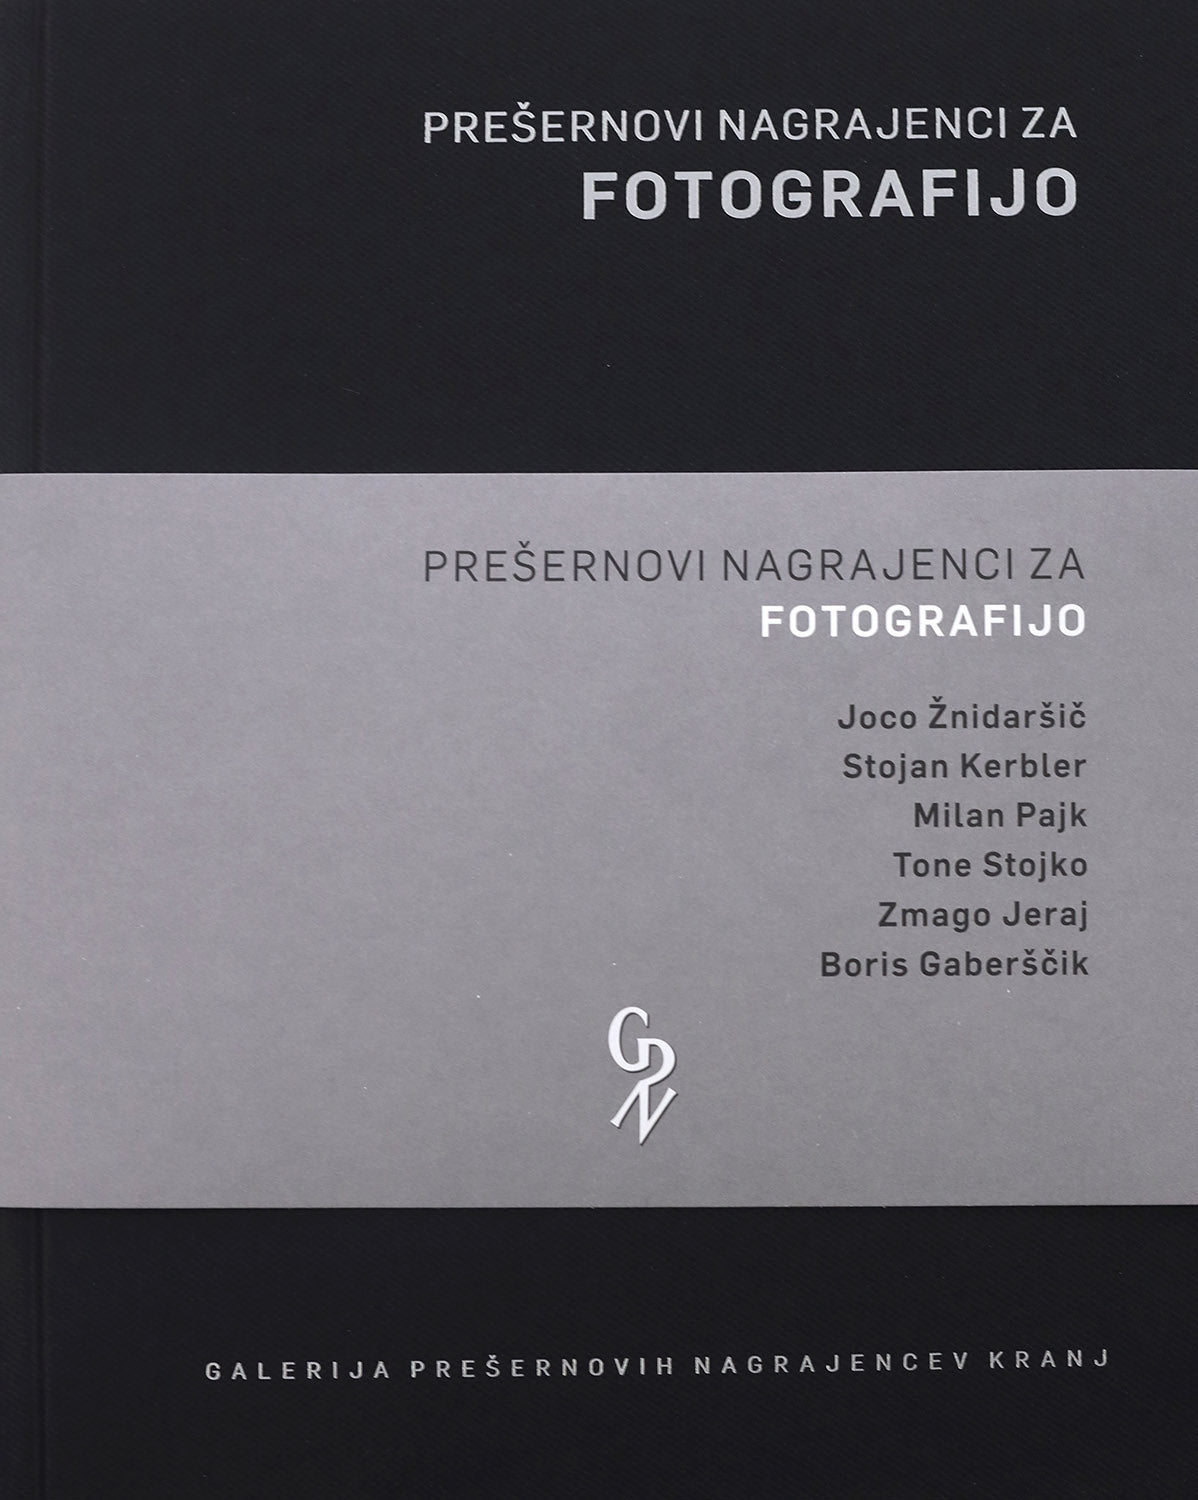 Prešeren Award Winners for Photography